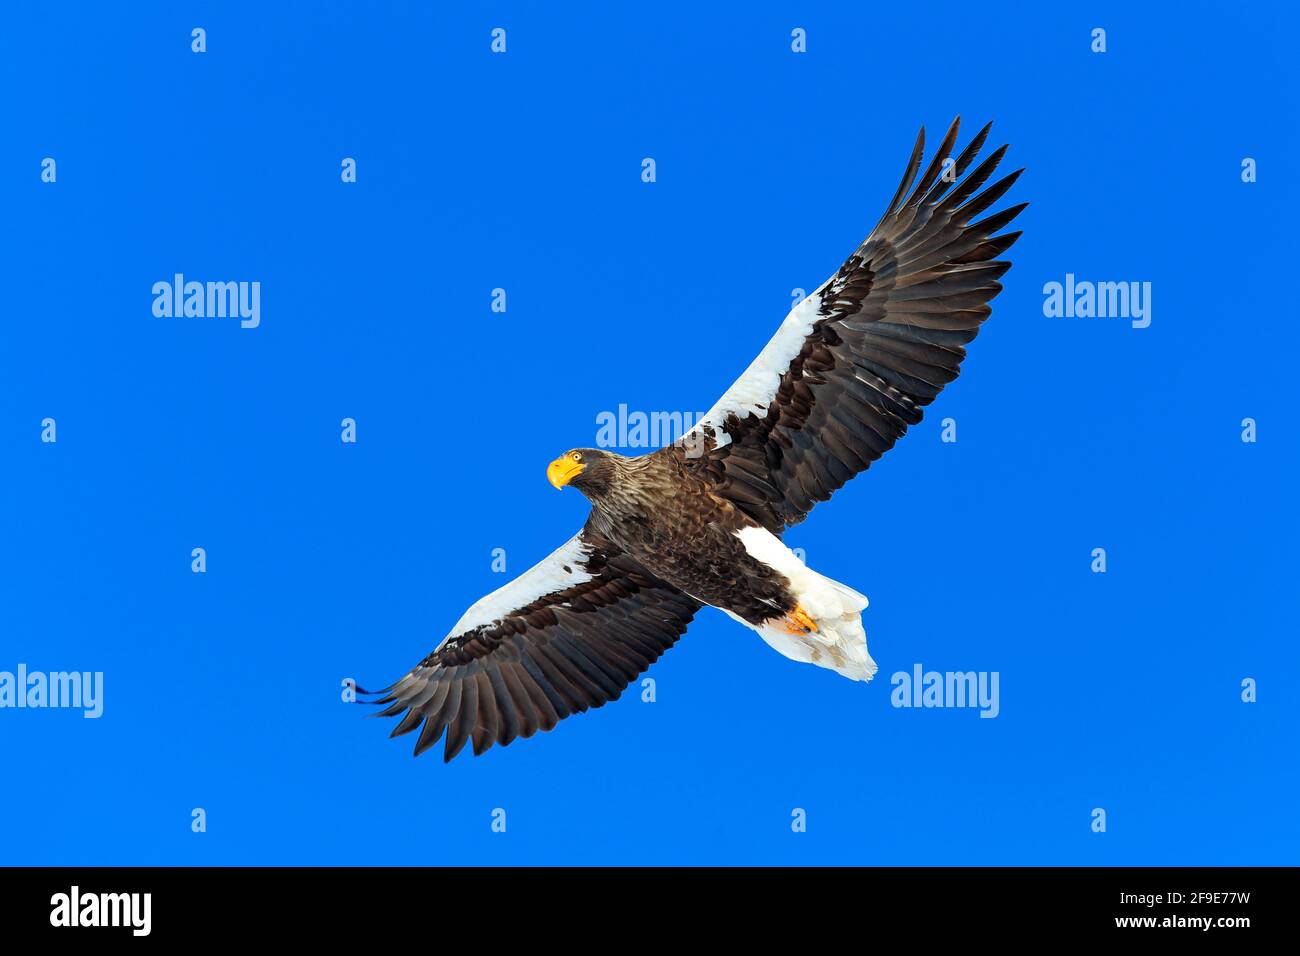 Aquila di mare di Steller, Haliaetus pelagicus, uccello di preda volante, con cielo blu sullo sfondo, Hokkaido, Giappone. Aquila con le ali aperte. Scena faunistica fr Foto Stock